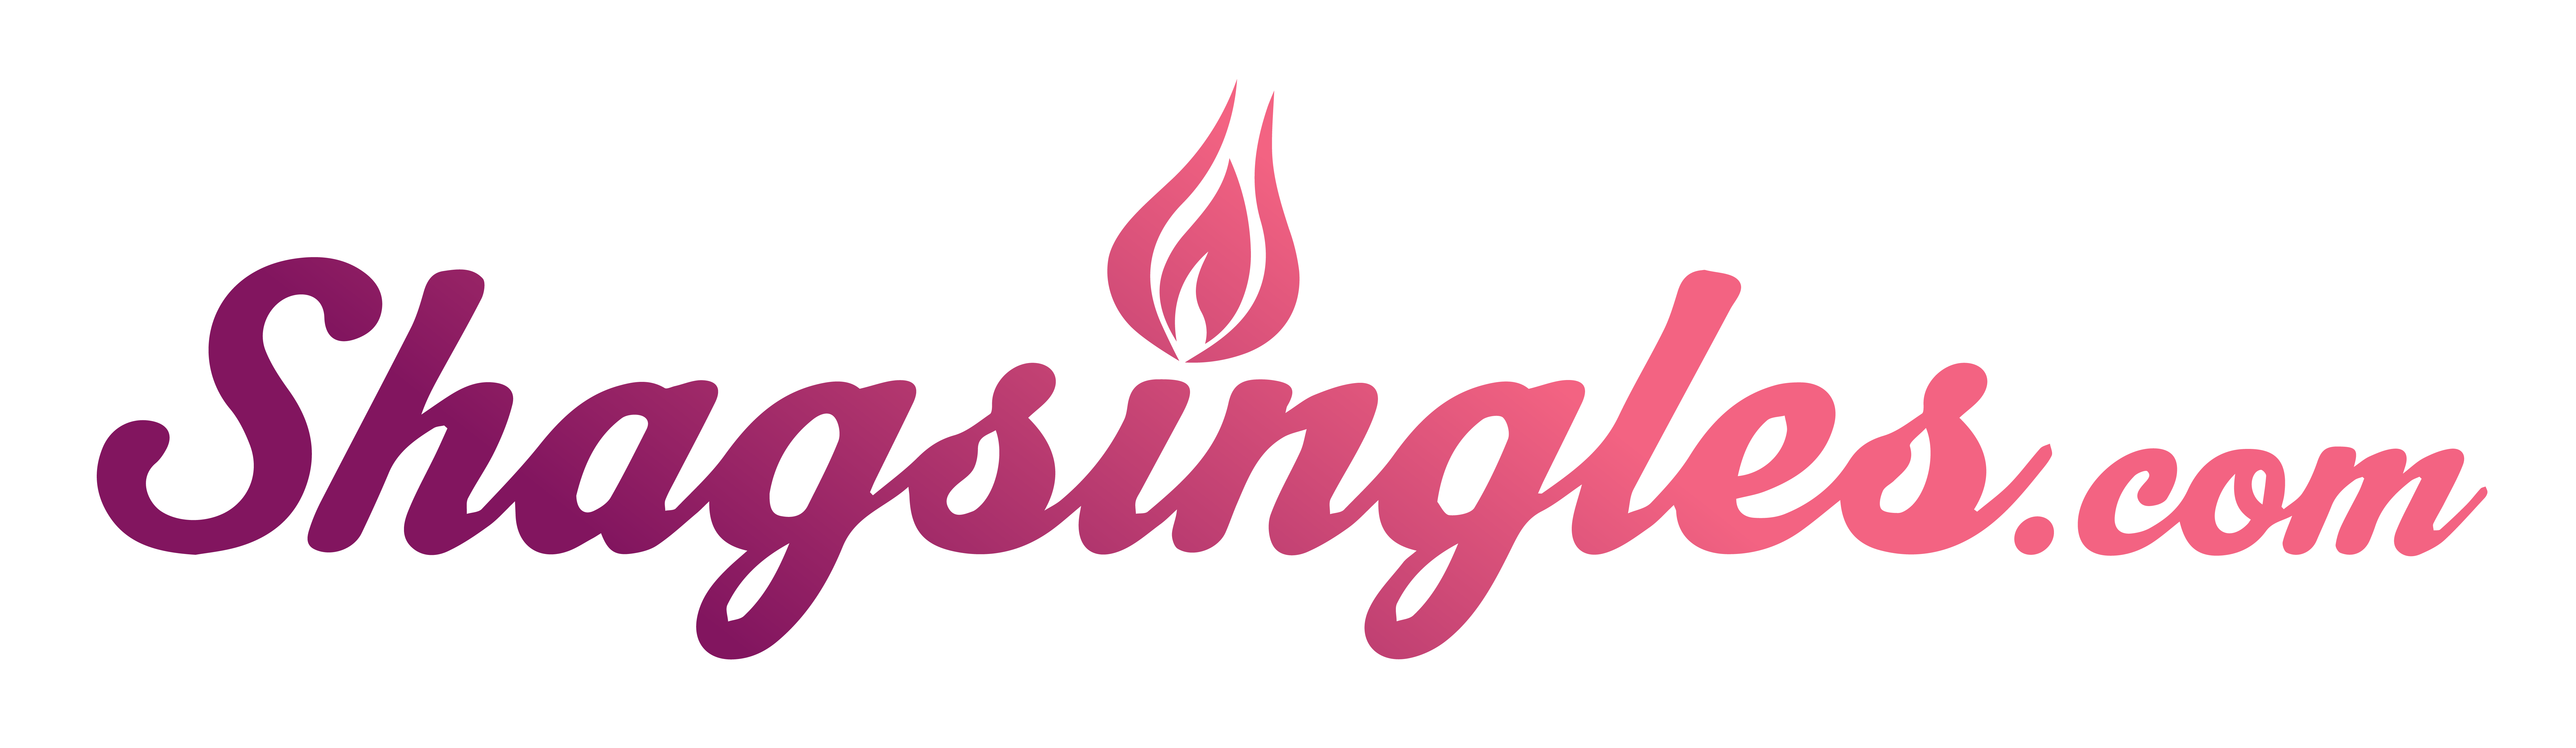 shagsingles.com